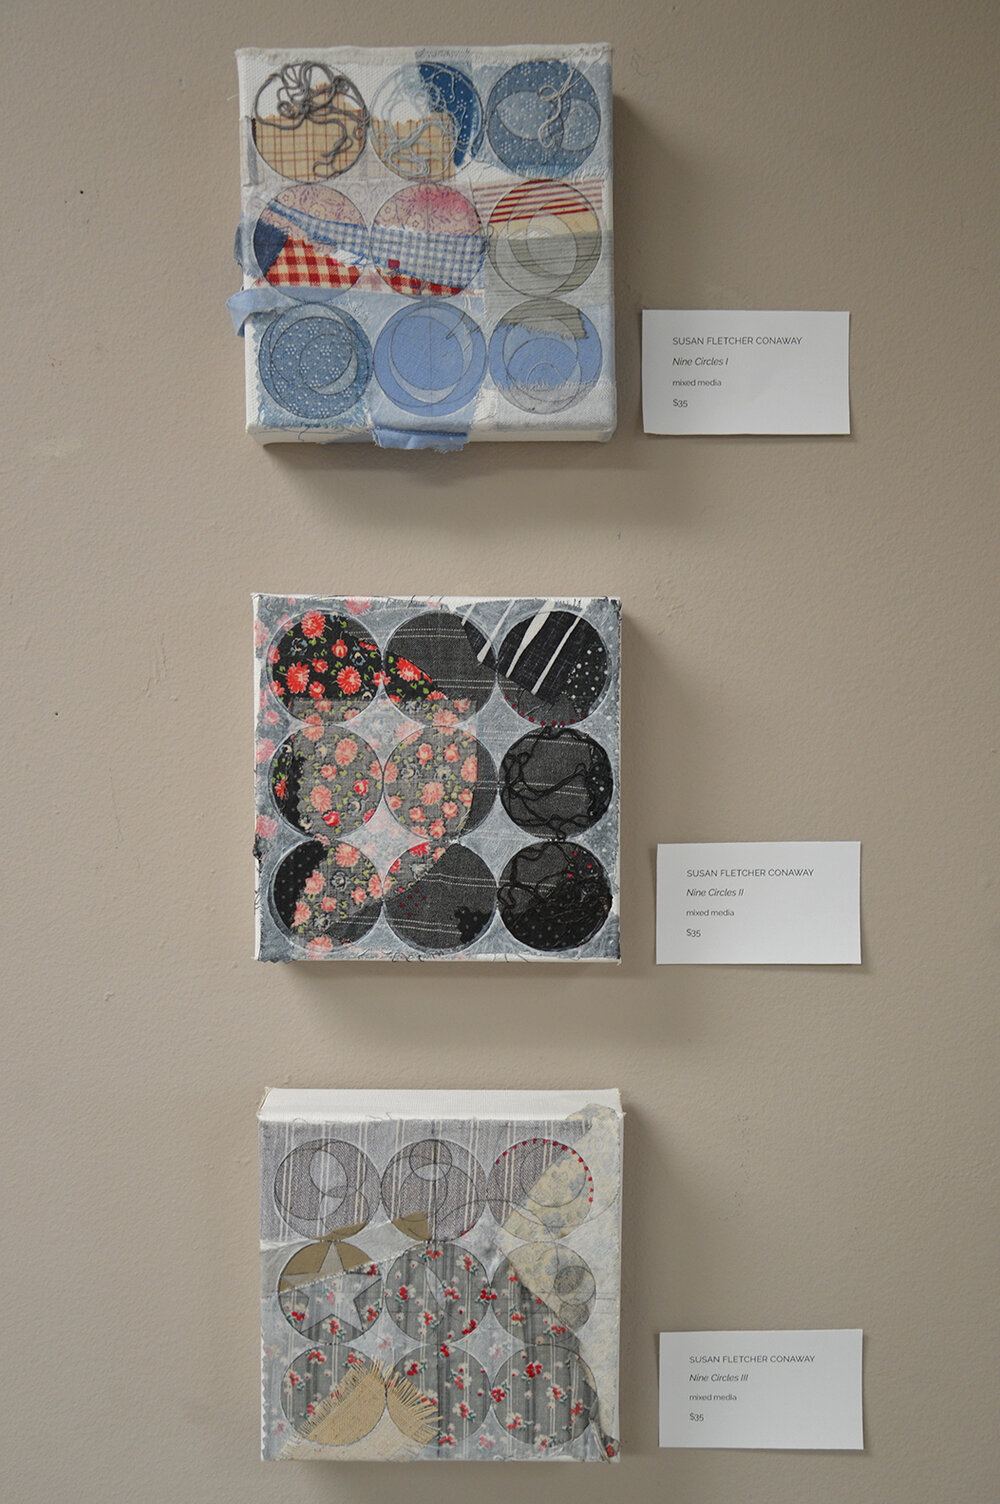   Circles I, II, and III,  mixed media by Susan Fletcher Conaway 